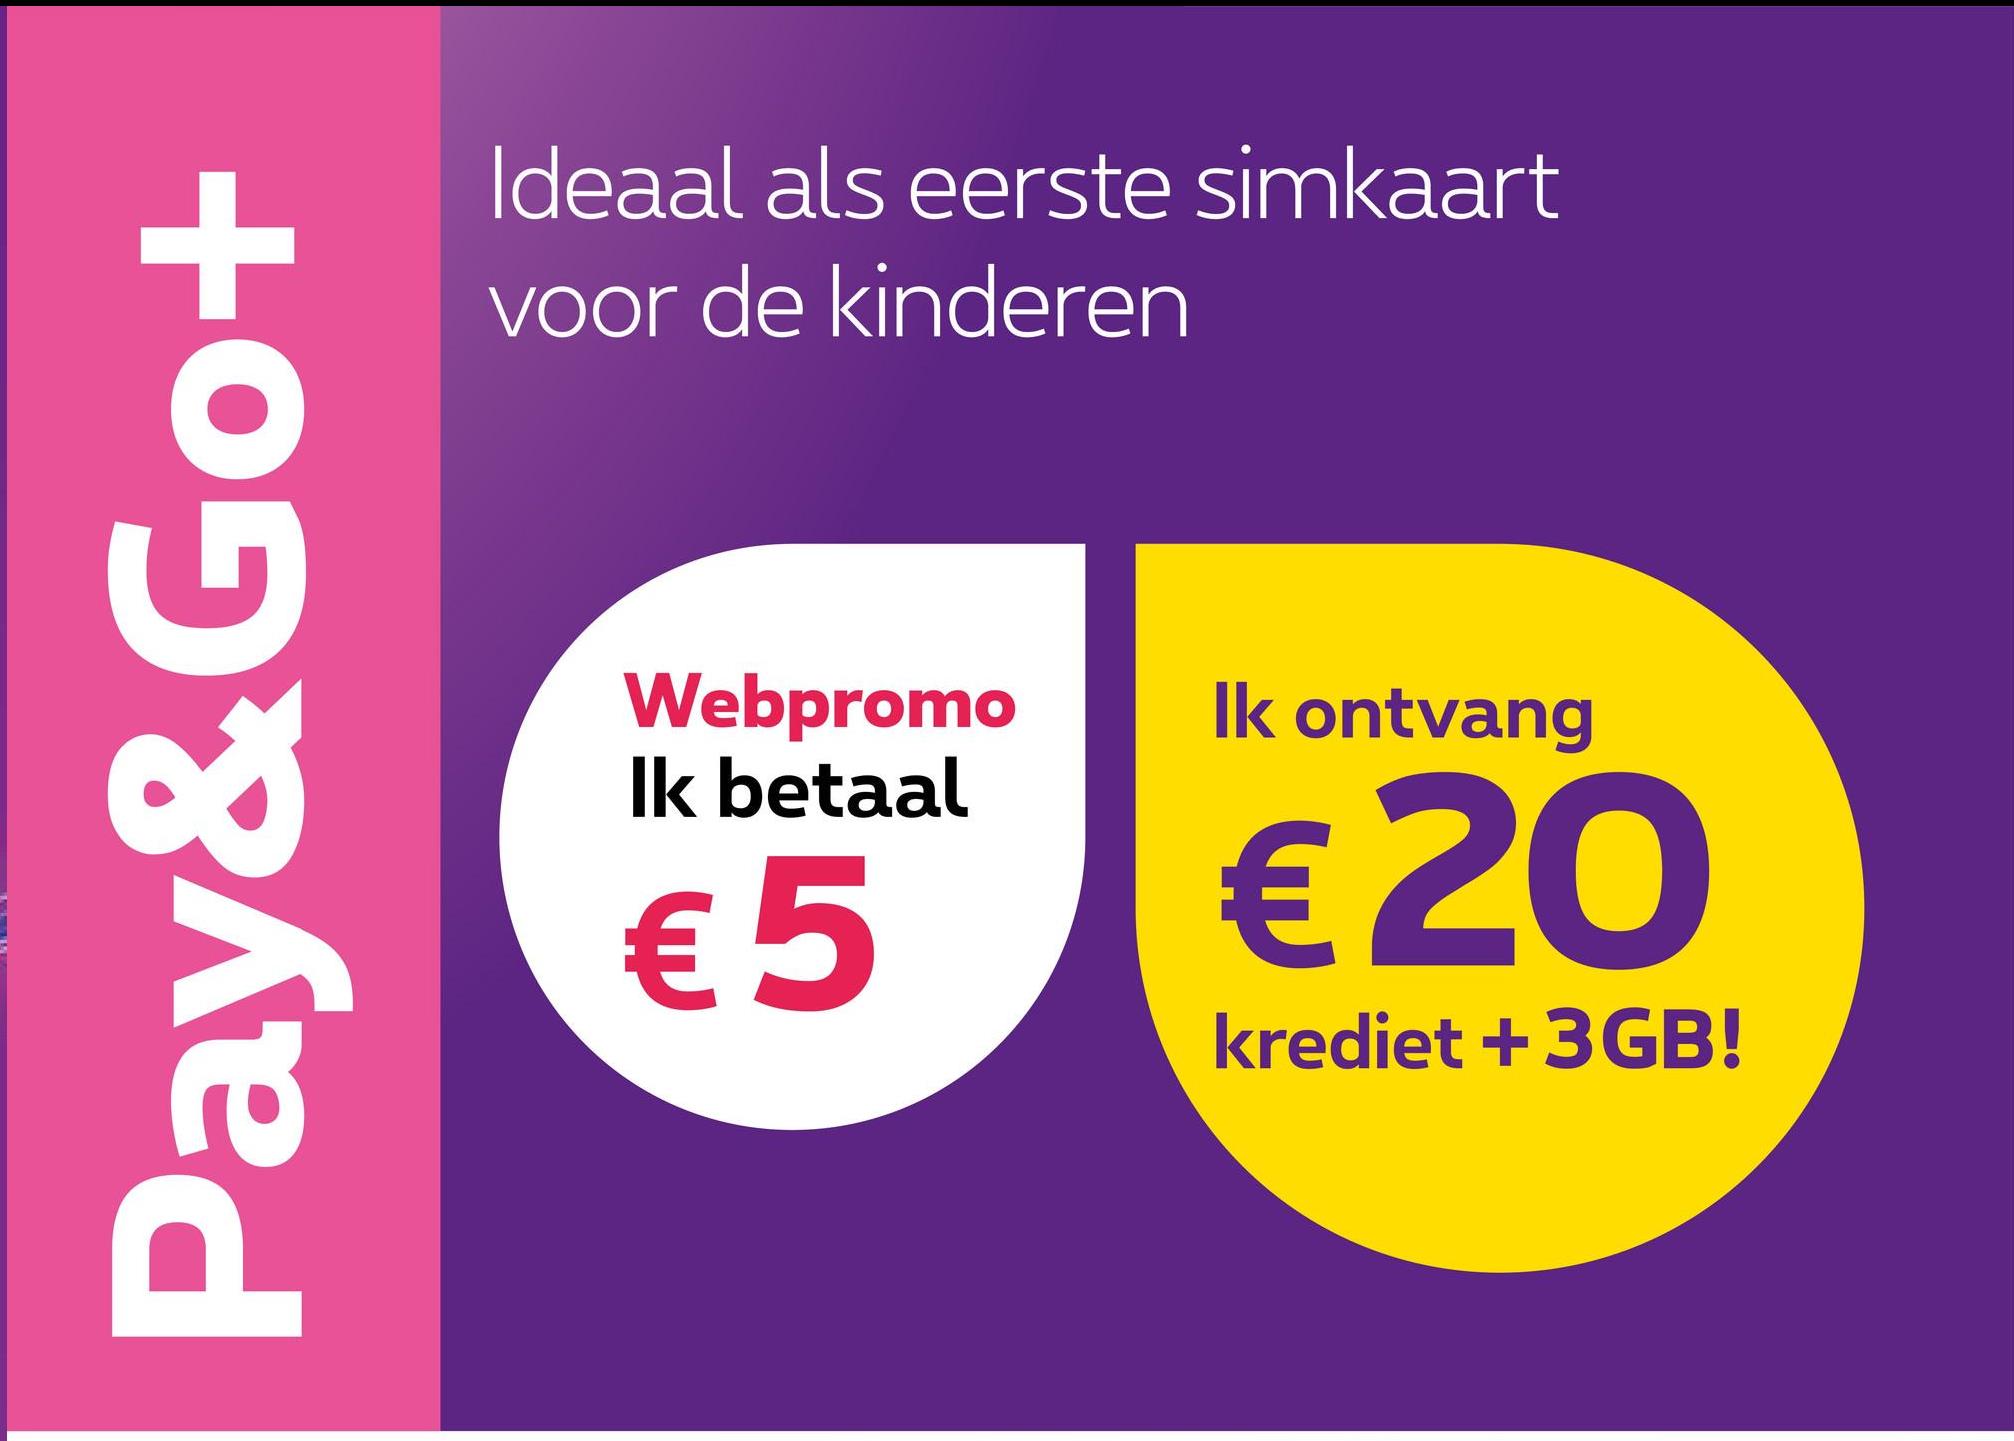 Pay&Go+
Ideaal als eerste simkaart
voor de kinderen
Webpromo
Ik betaal
€5
Ik ontvang
€ 20
krediet +3GB!